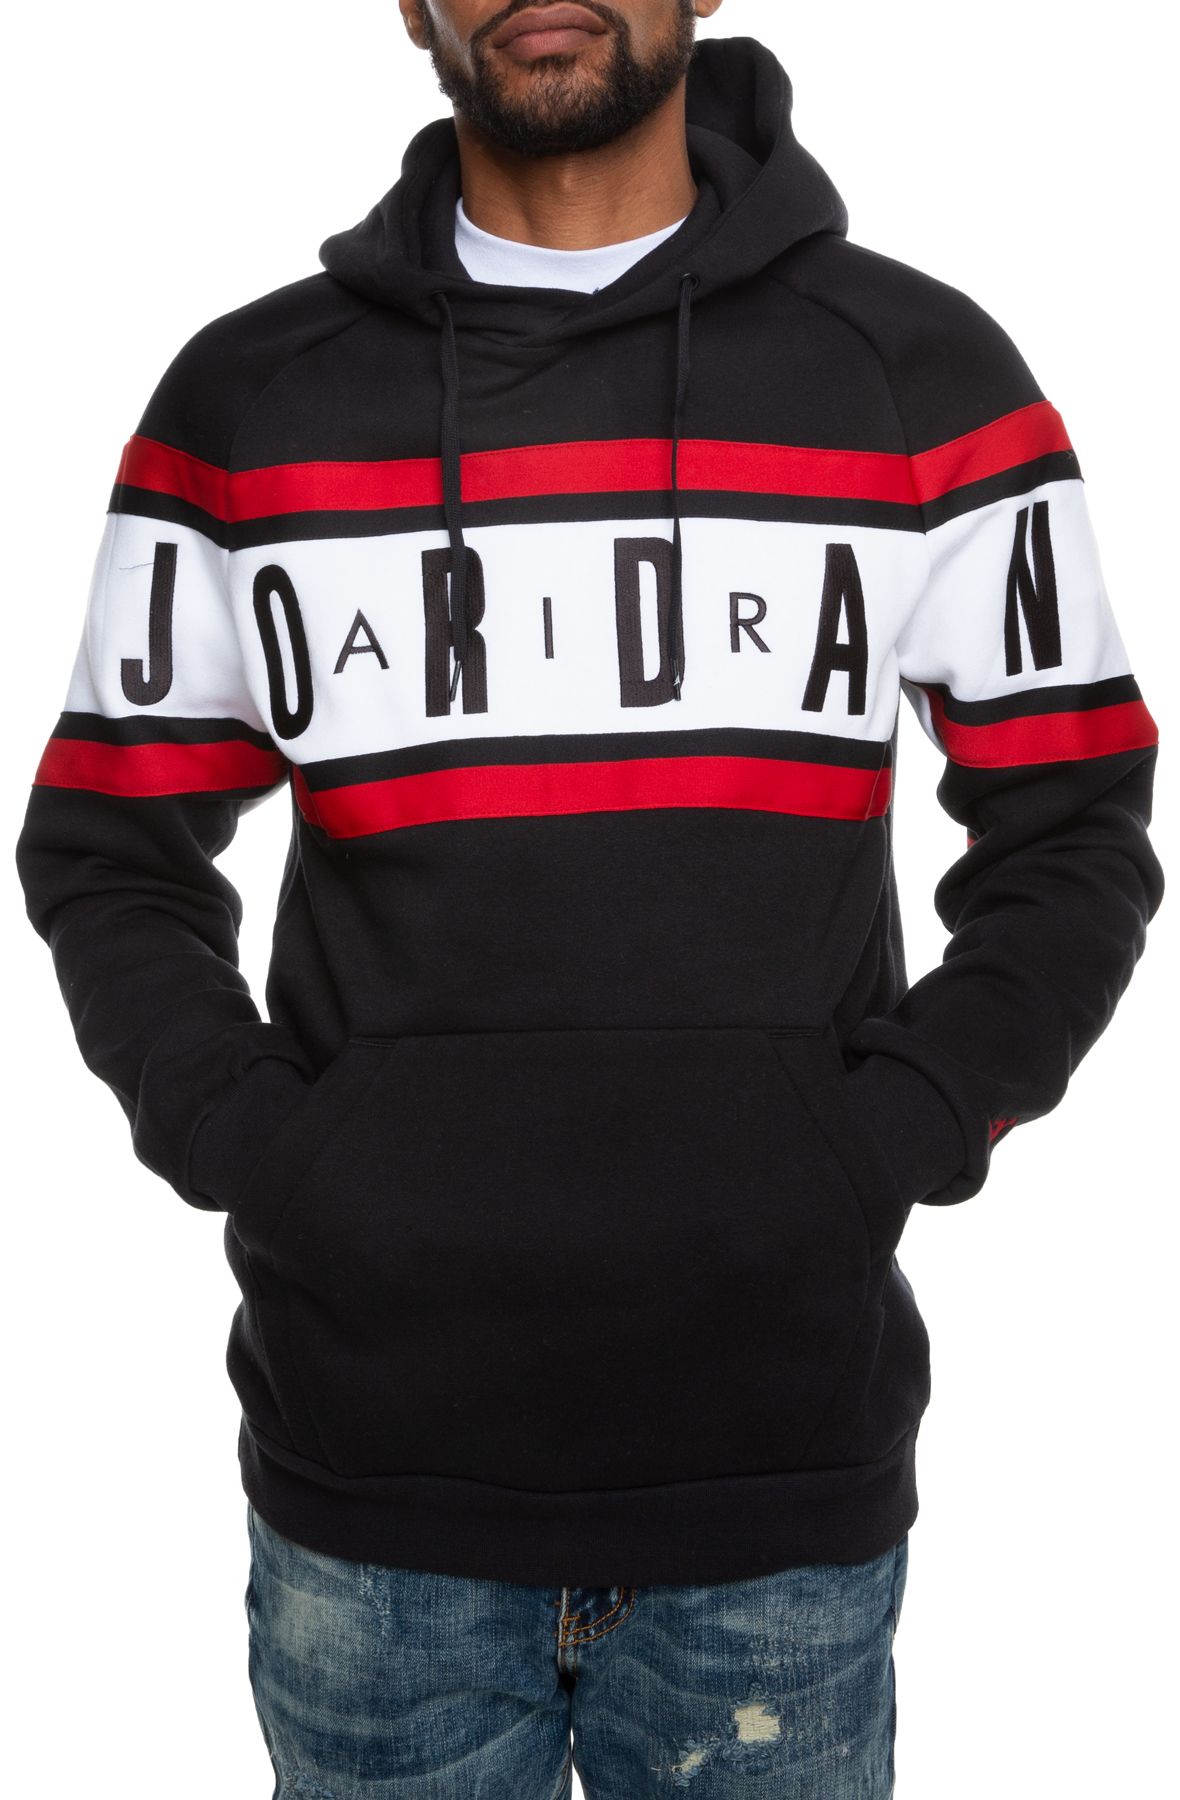 air jordan black and red hoodie